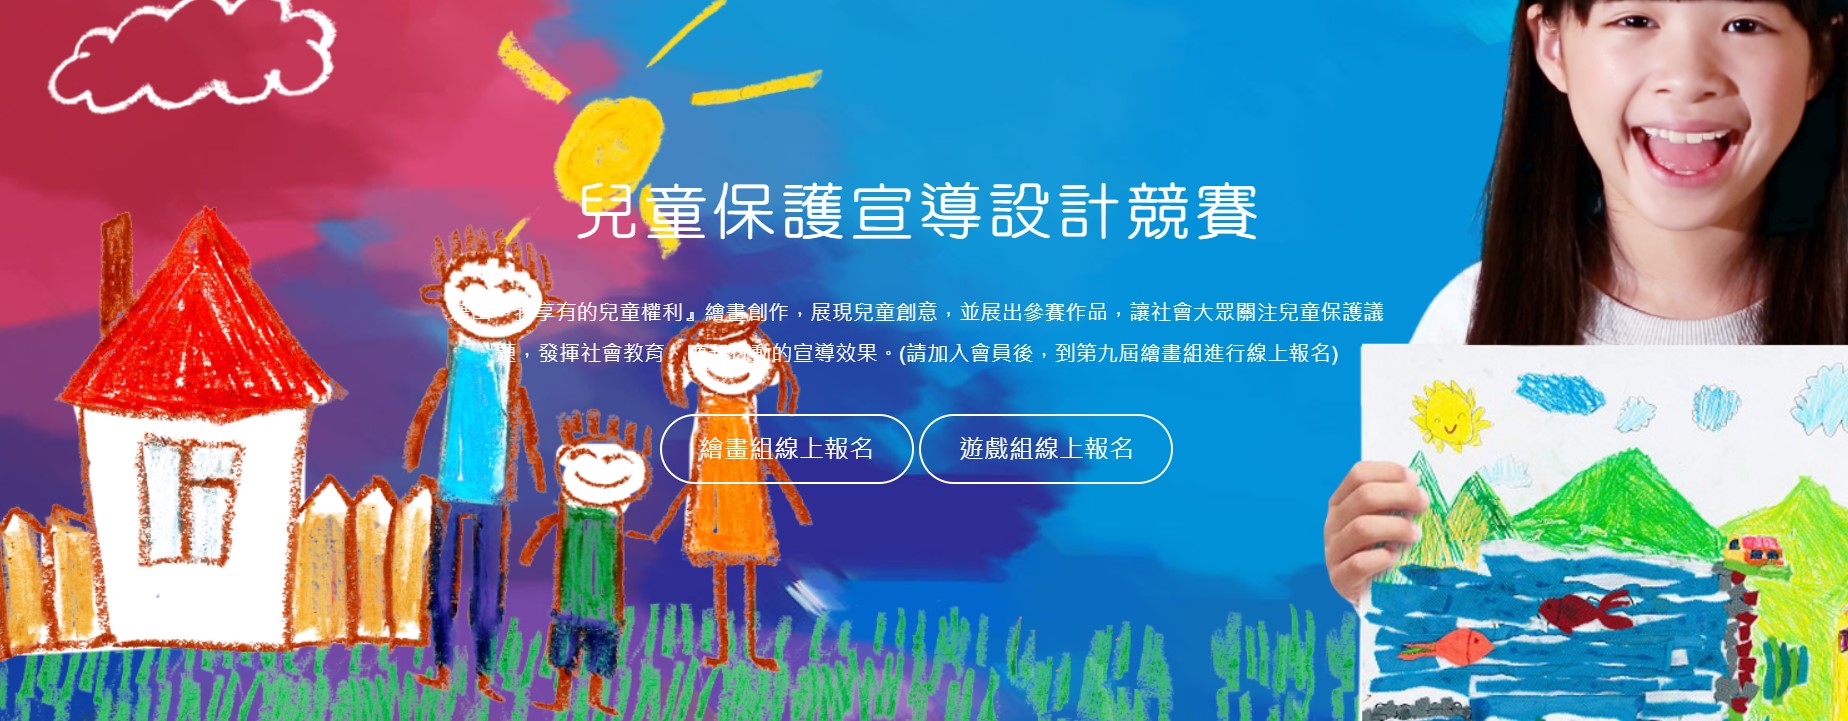 轉知財團法人台灣兒童暨家庭扶助基金會辦理「第九屆家扶基金會-兒童保護宣導創意設計」兒童繪畫競賽辦法